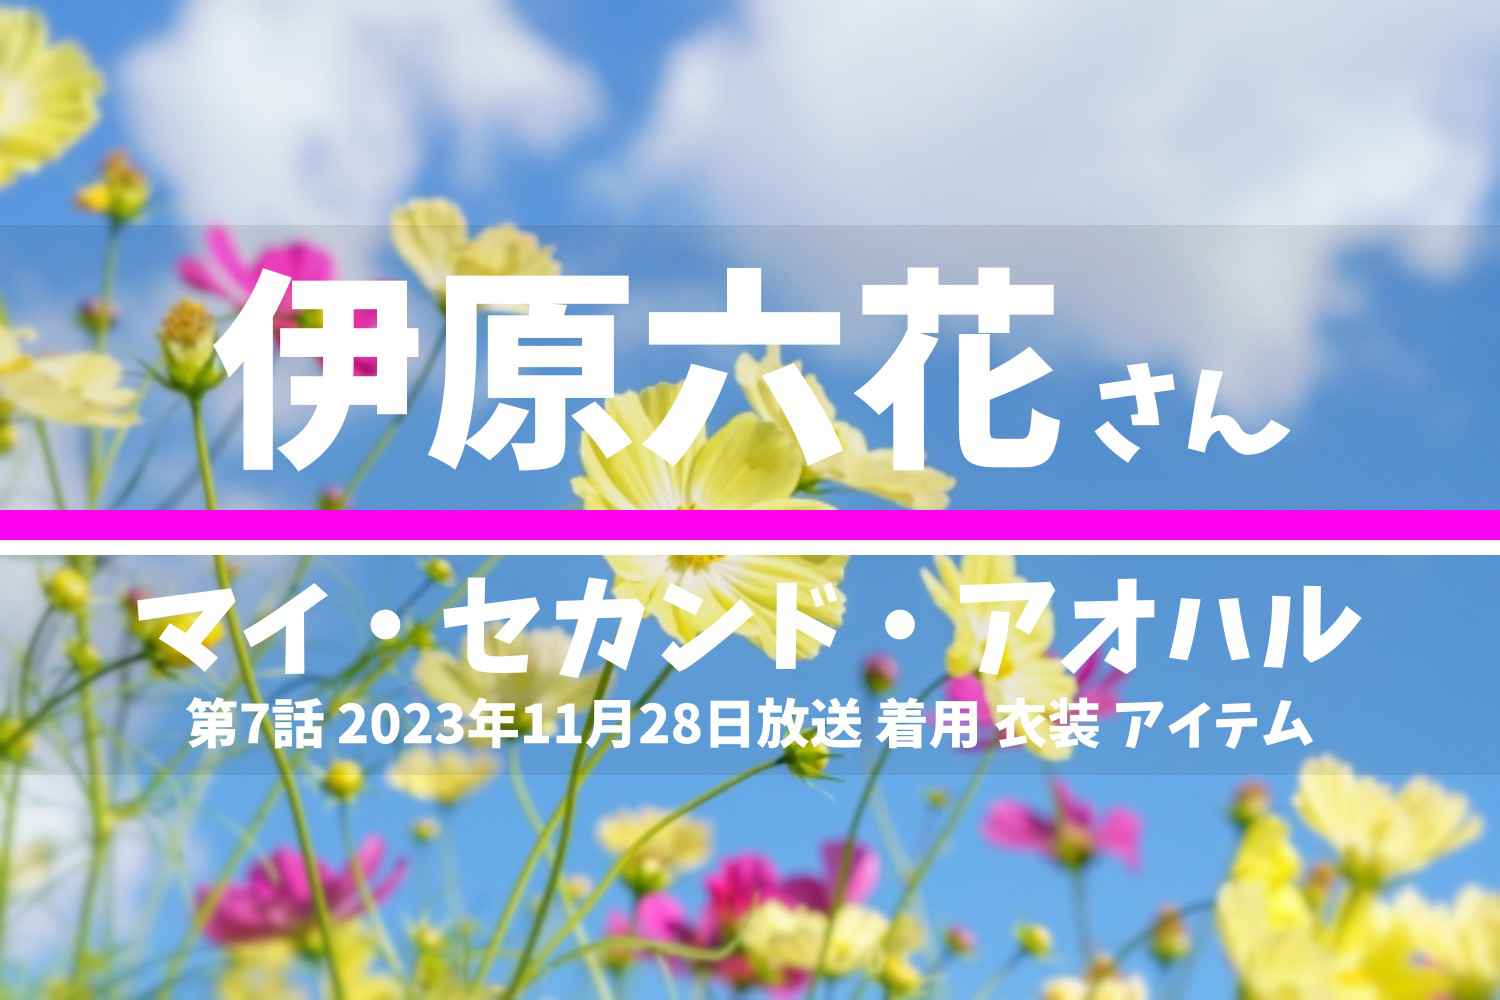 マイ・セカンド・アオハル 伊原六花さん テレビドラマ 衣装 2023年11月28日放送